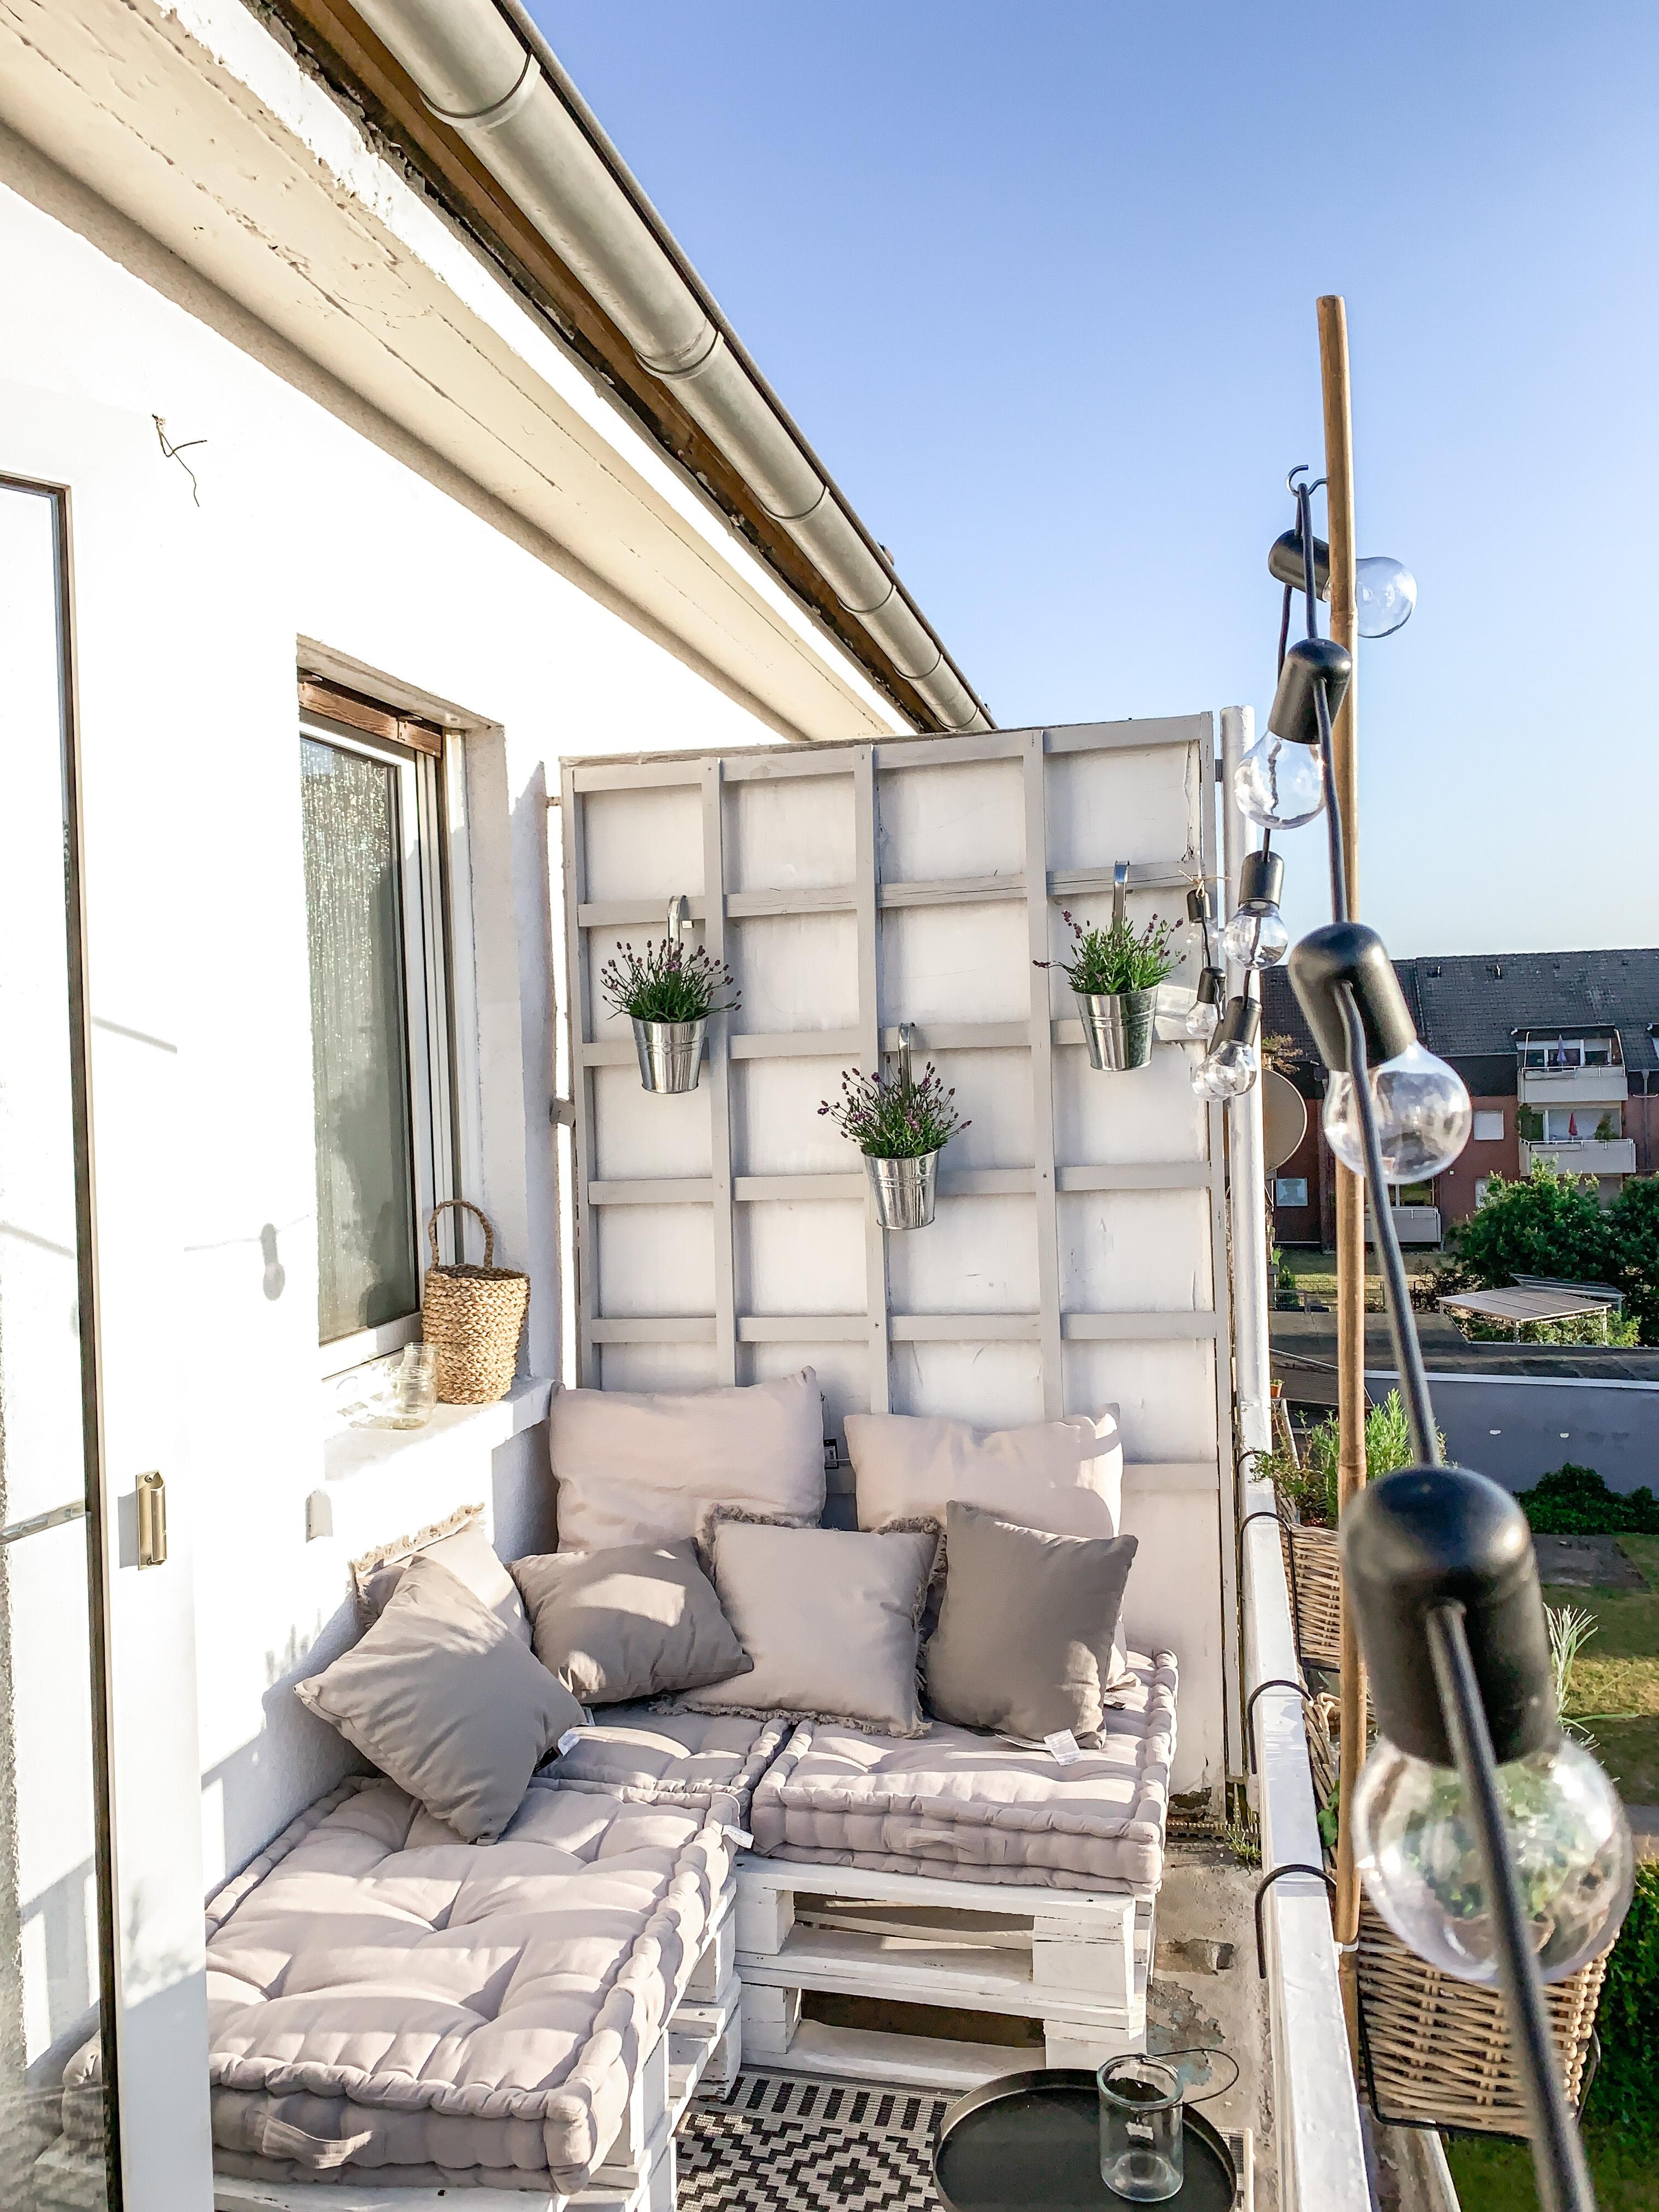 Sonne genießen #balkon #balkonien #draußen #gemütlich #paletten #palettenbank